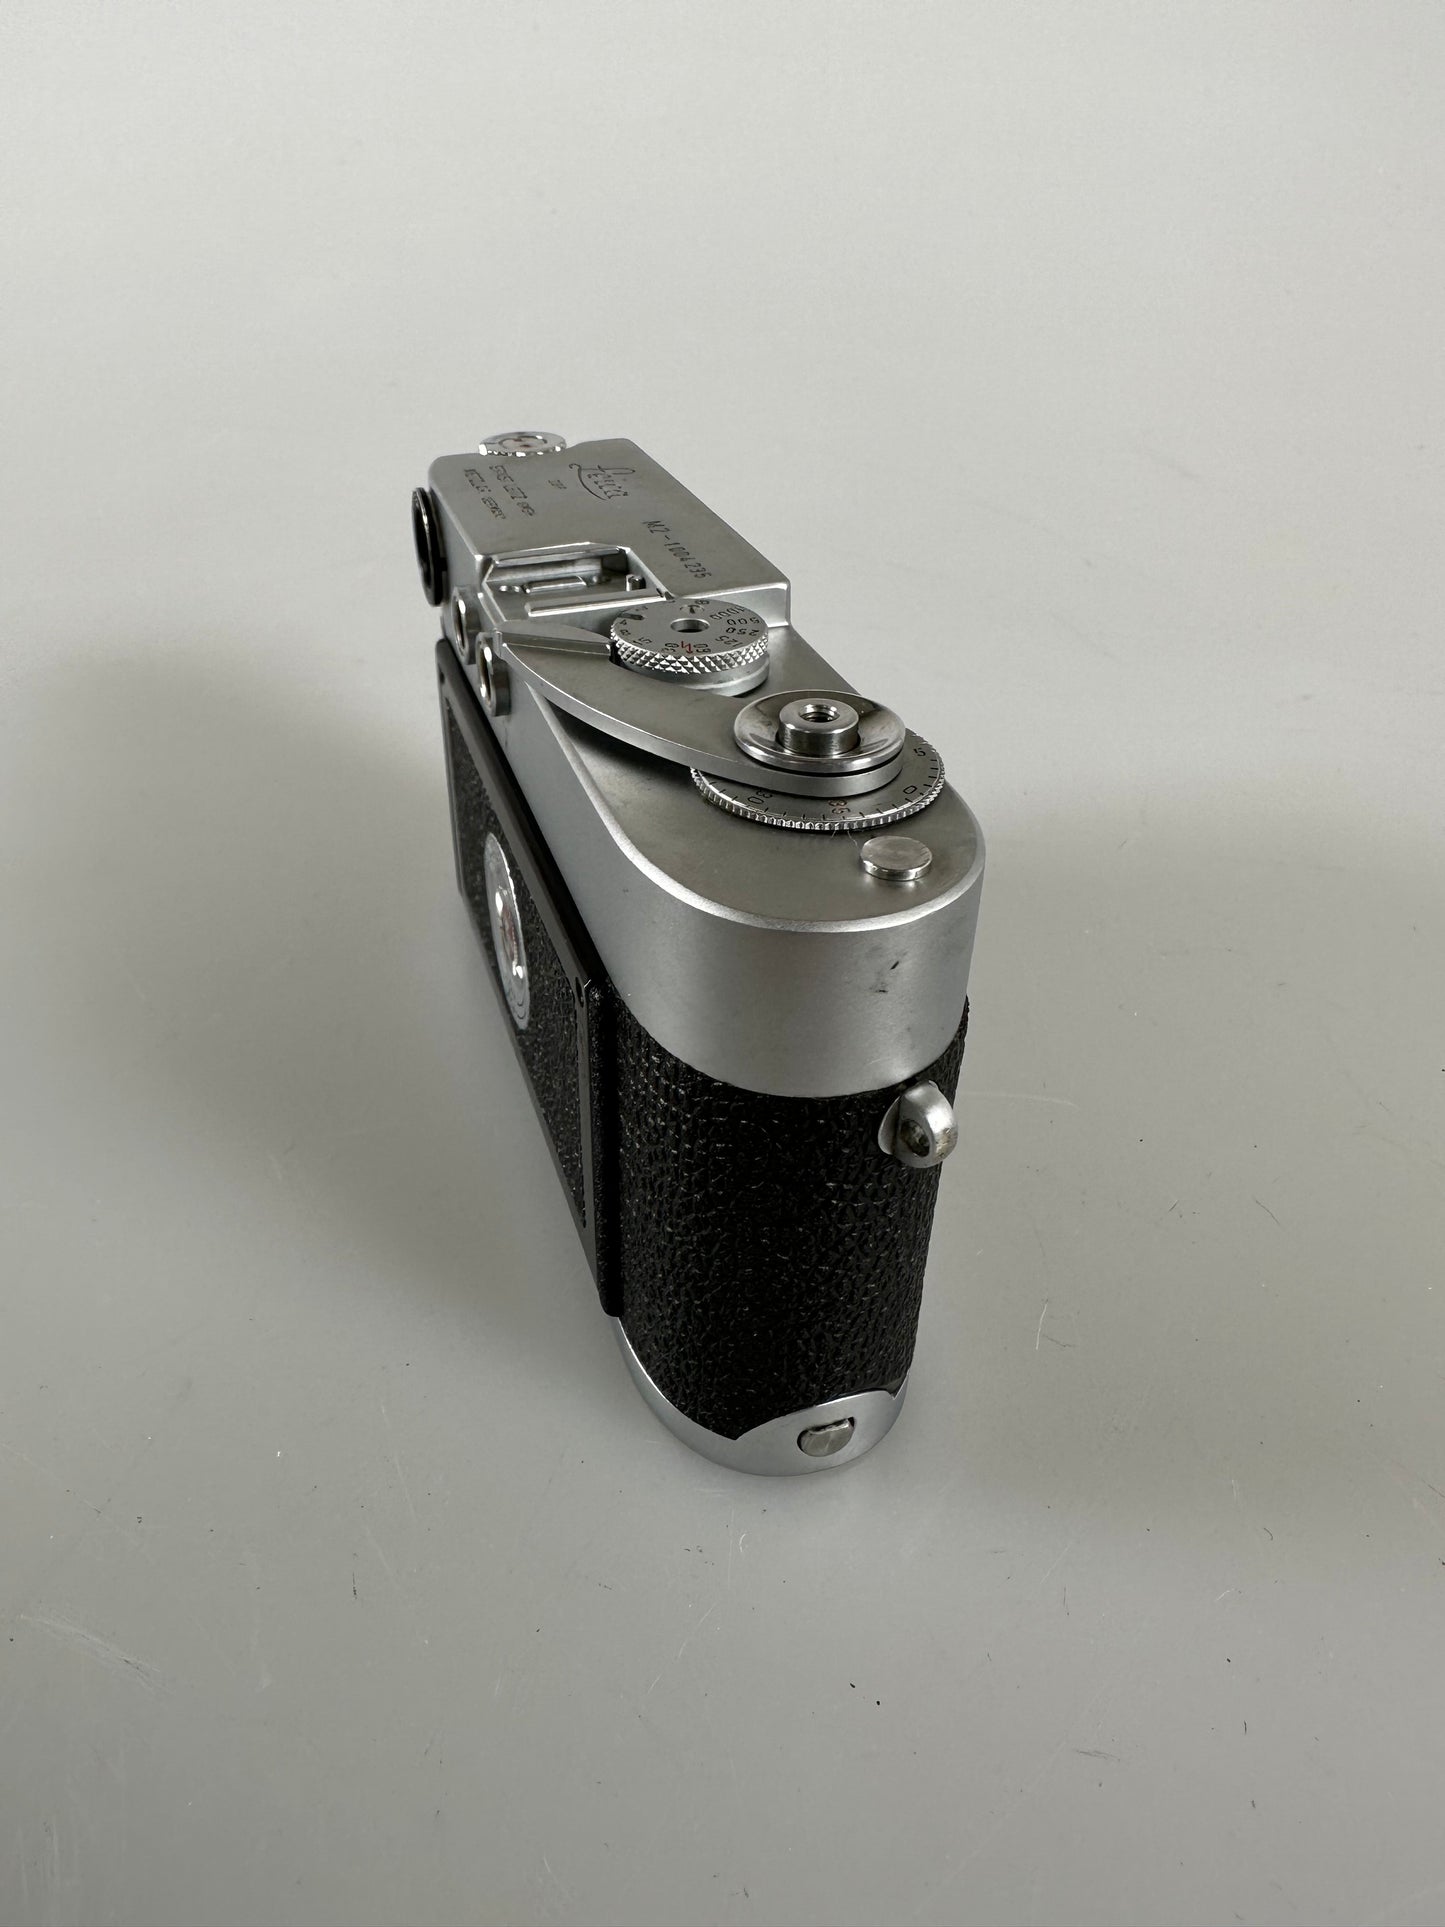 Leica M2 w/ Self Timer Chrome 35mm rangefinder film camera body